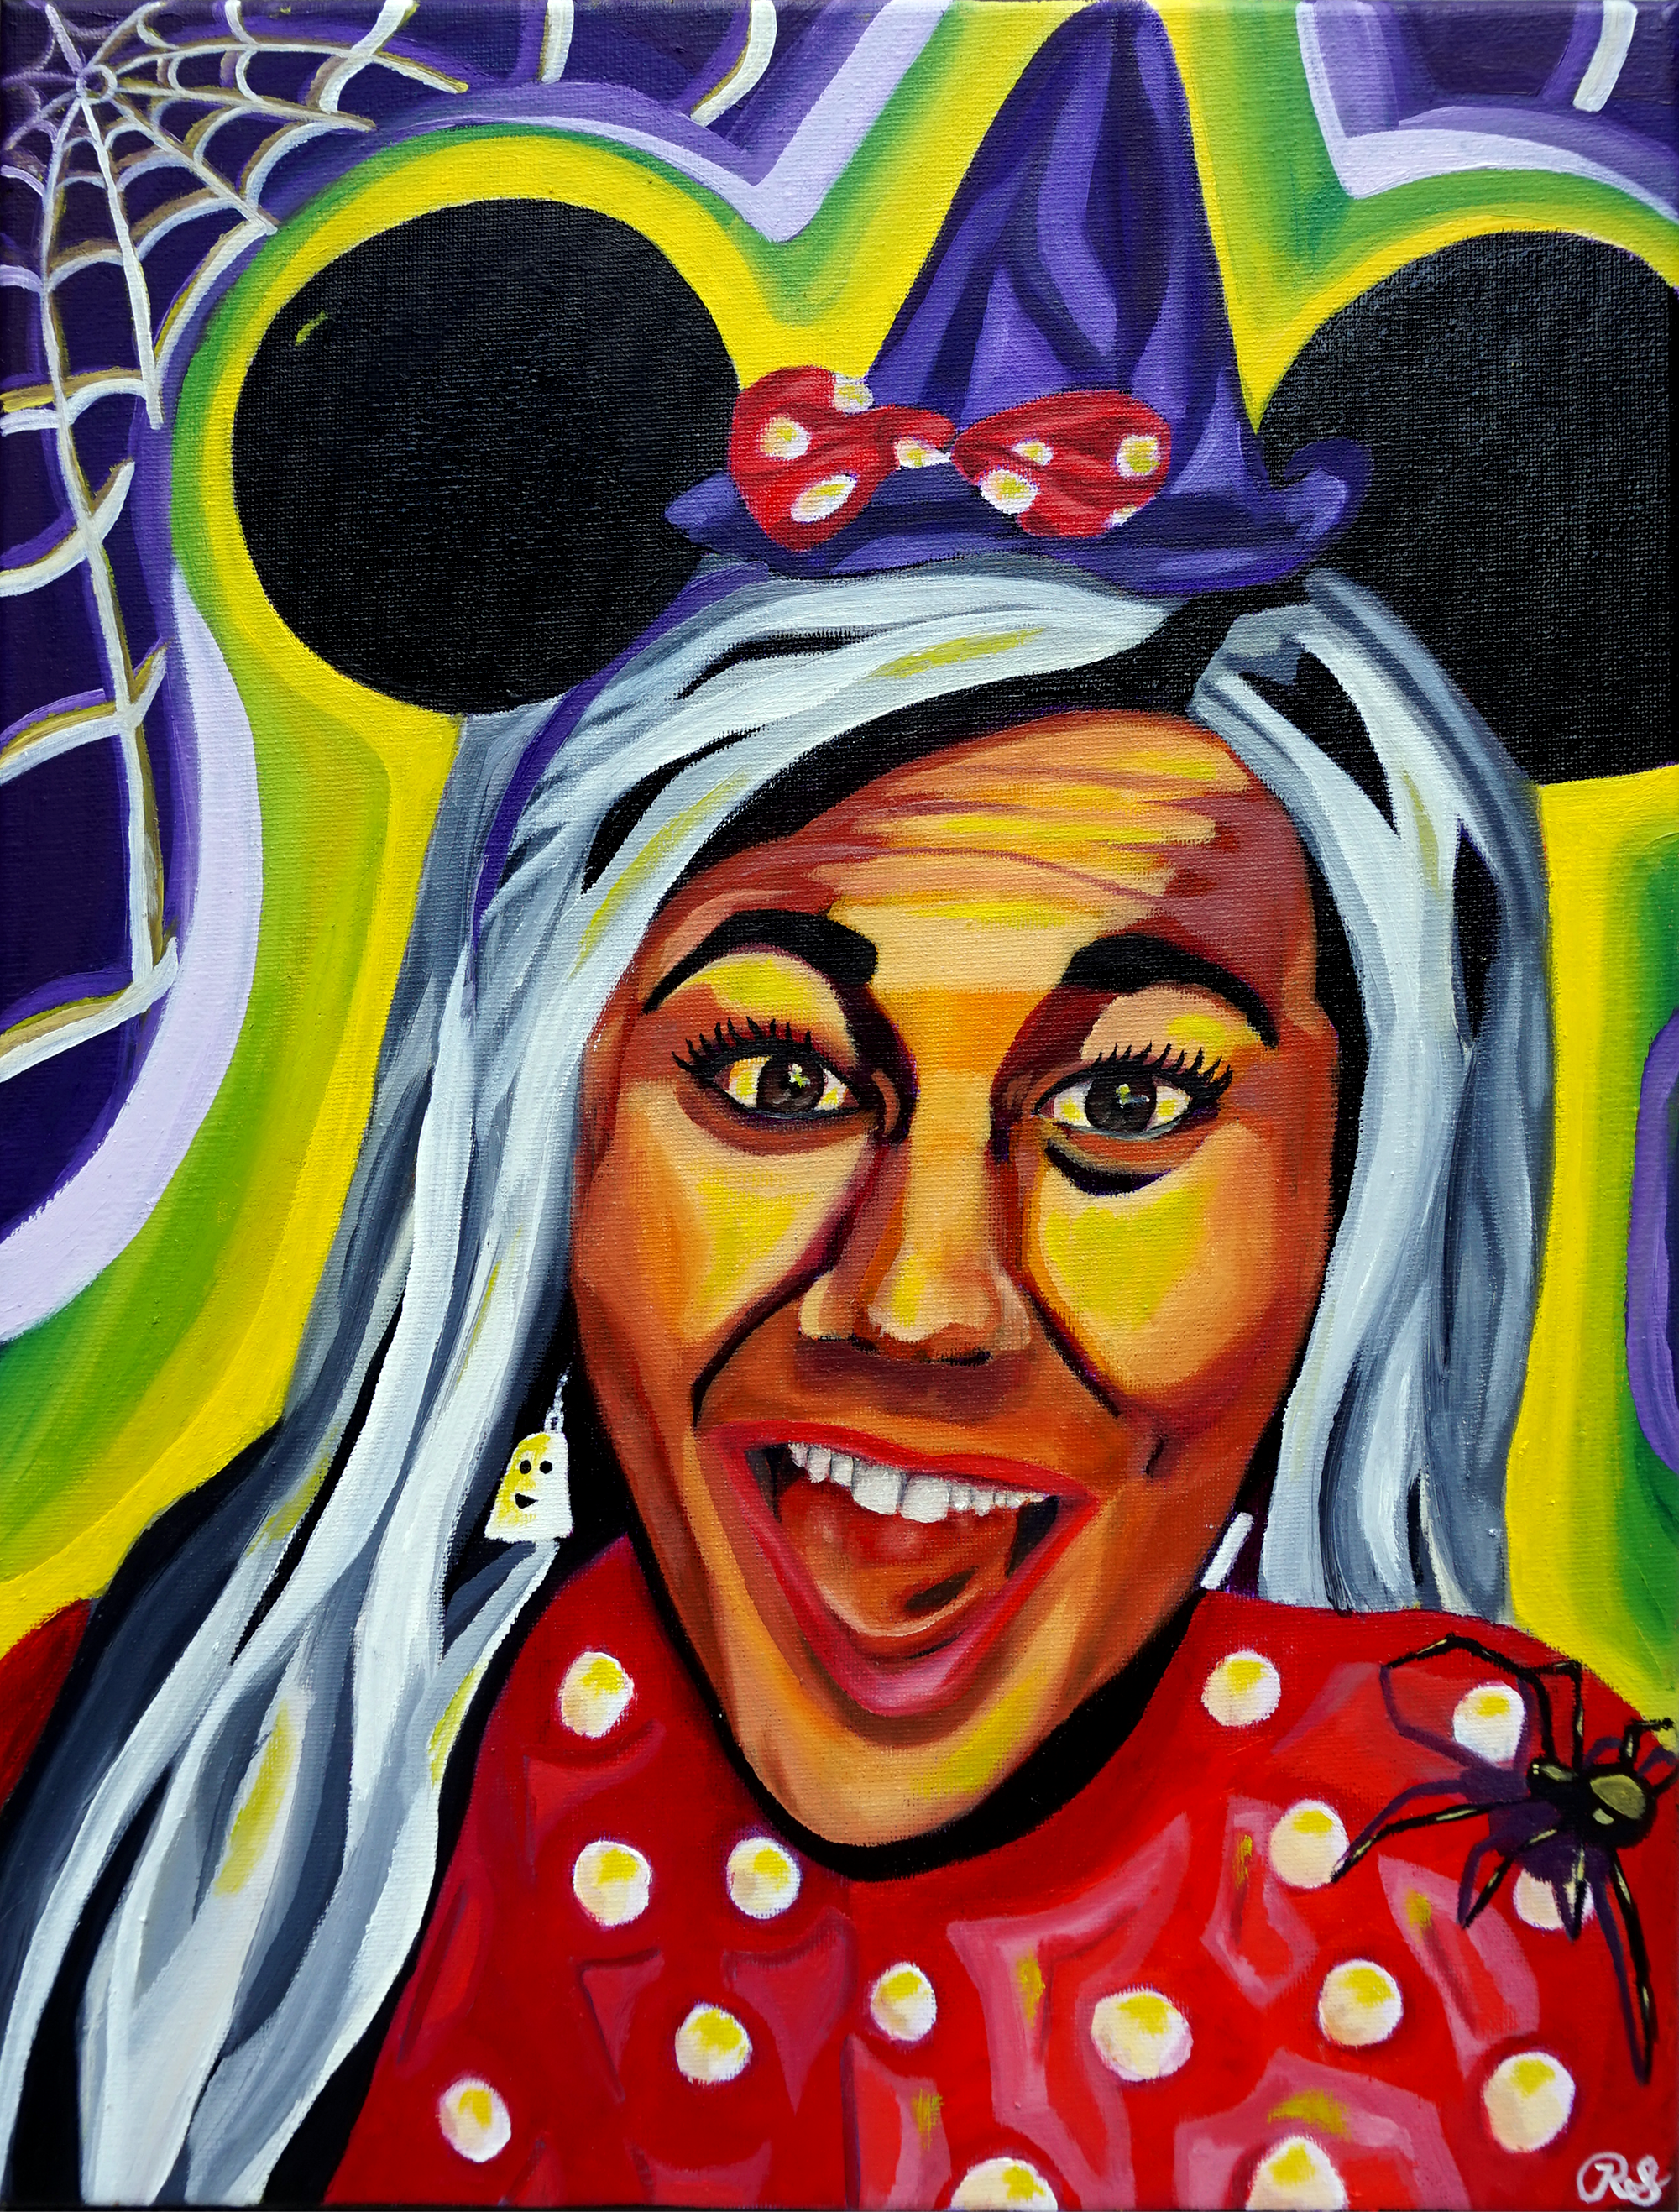 Minnie Mouse Portrait